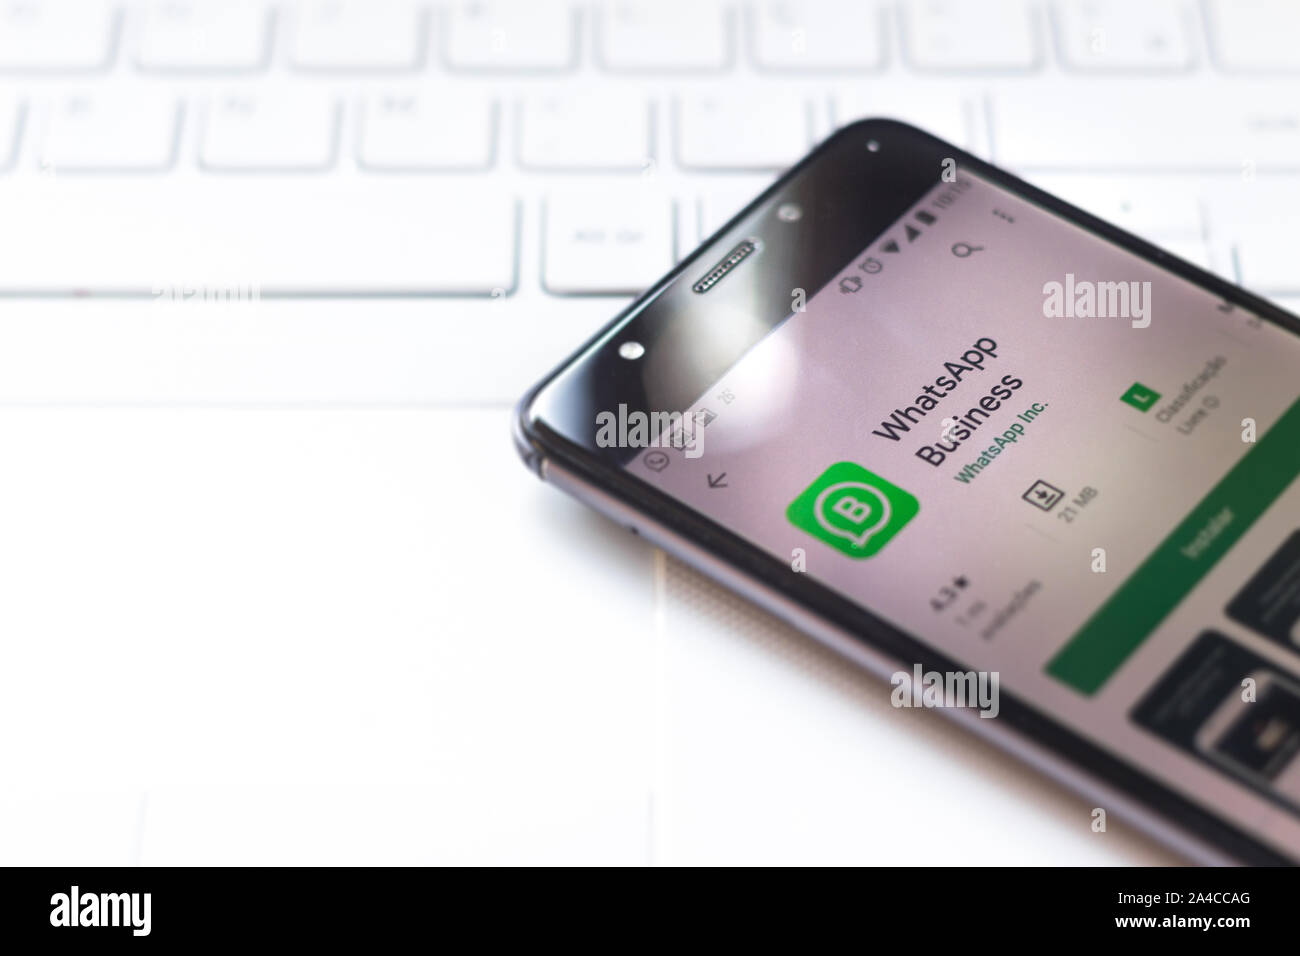 Sur cette photo, l'illustration de logo d'entreprise est vu WhatsApp affichée sur un smartphone. Banque D'Images